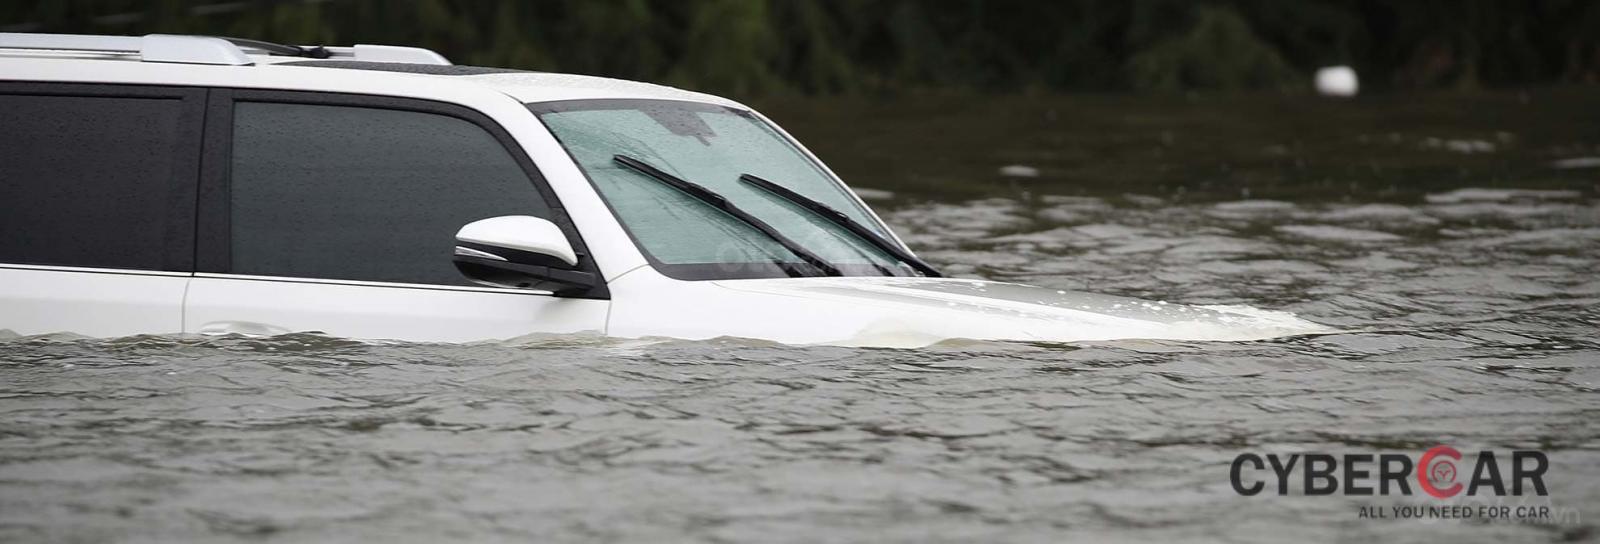 10 điều nên tuân thủ khi ô tô bị ngập nước - Đánh giá độ ngập